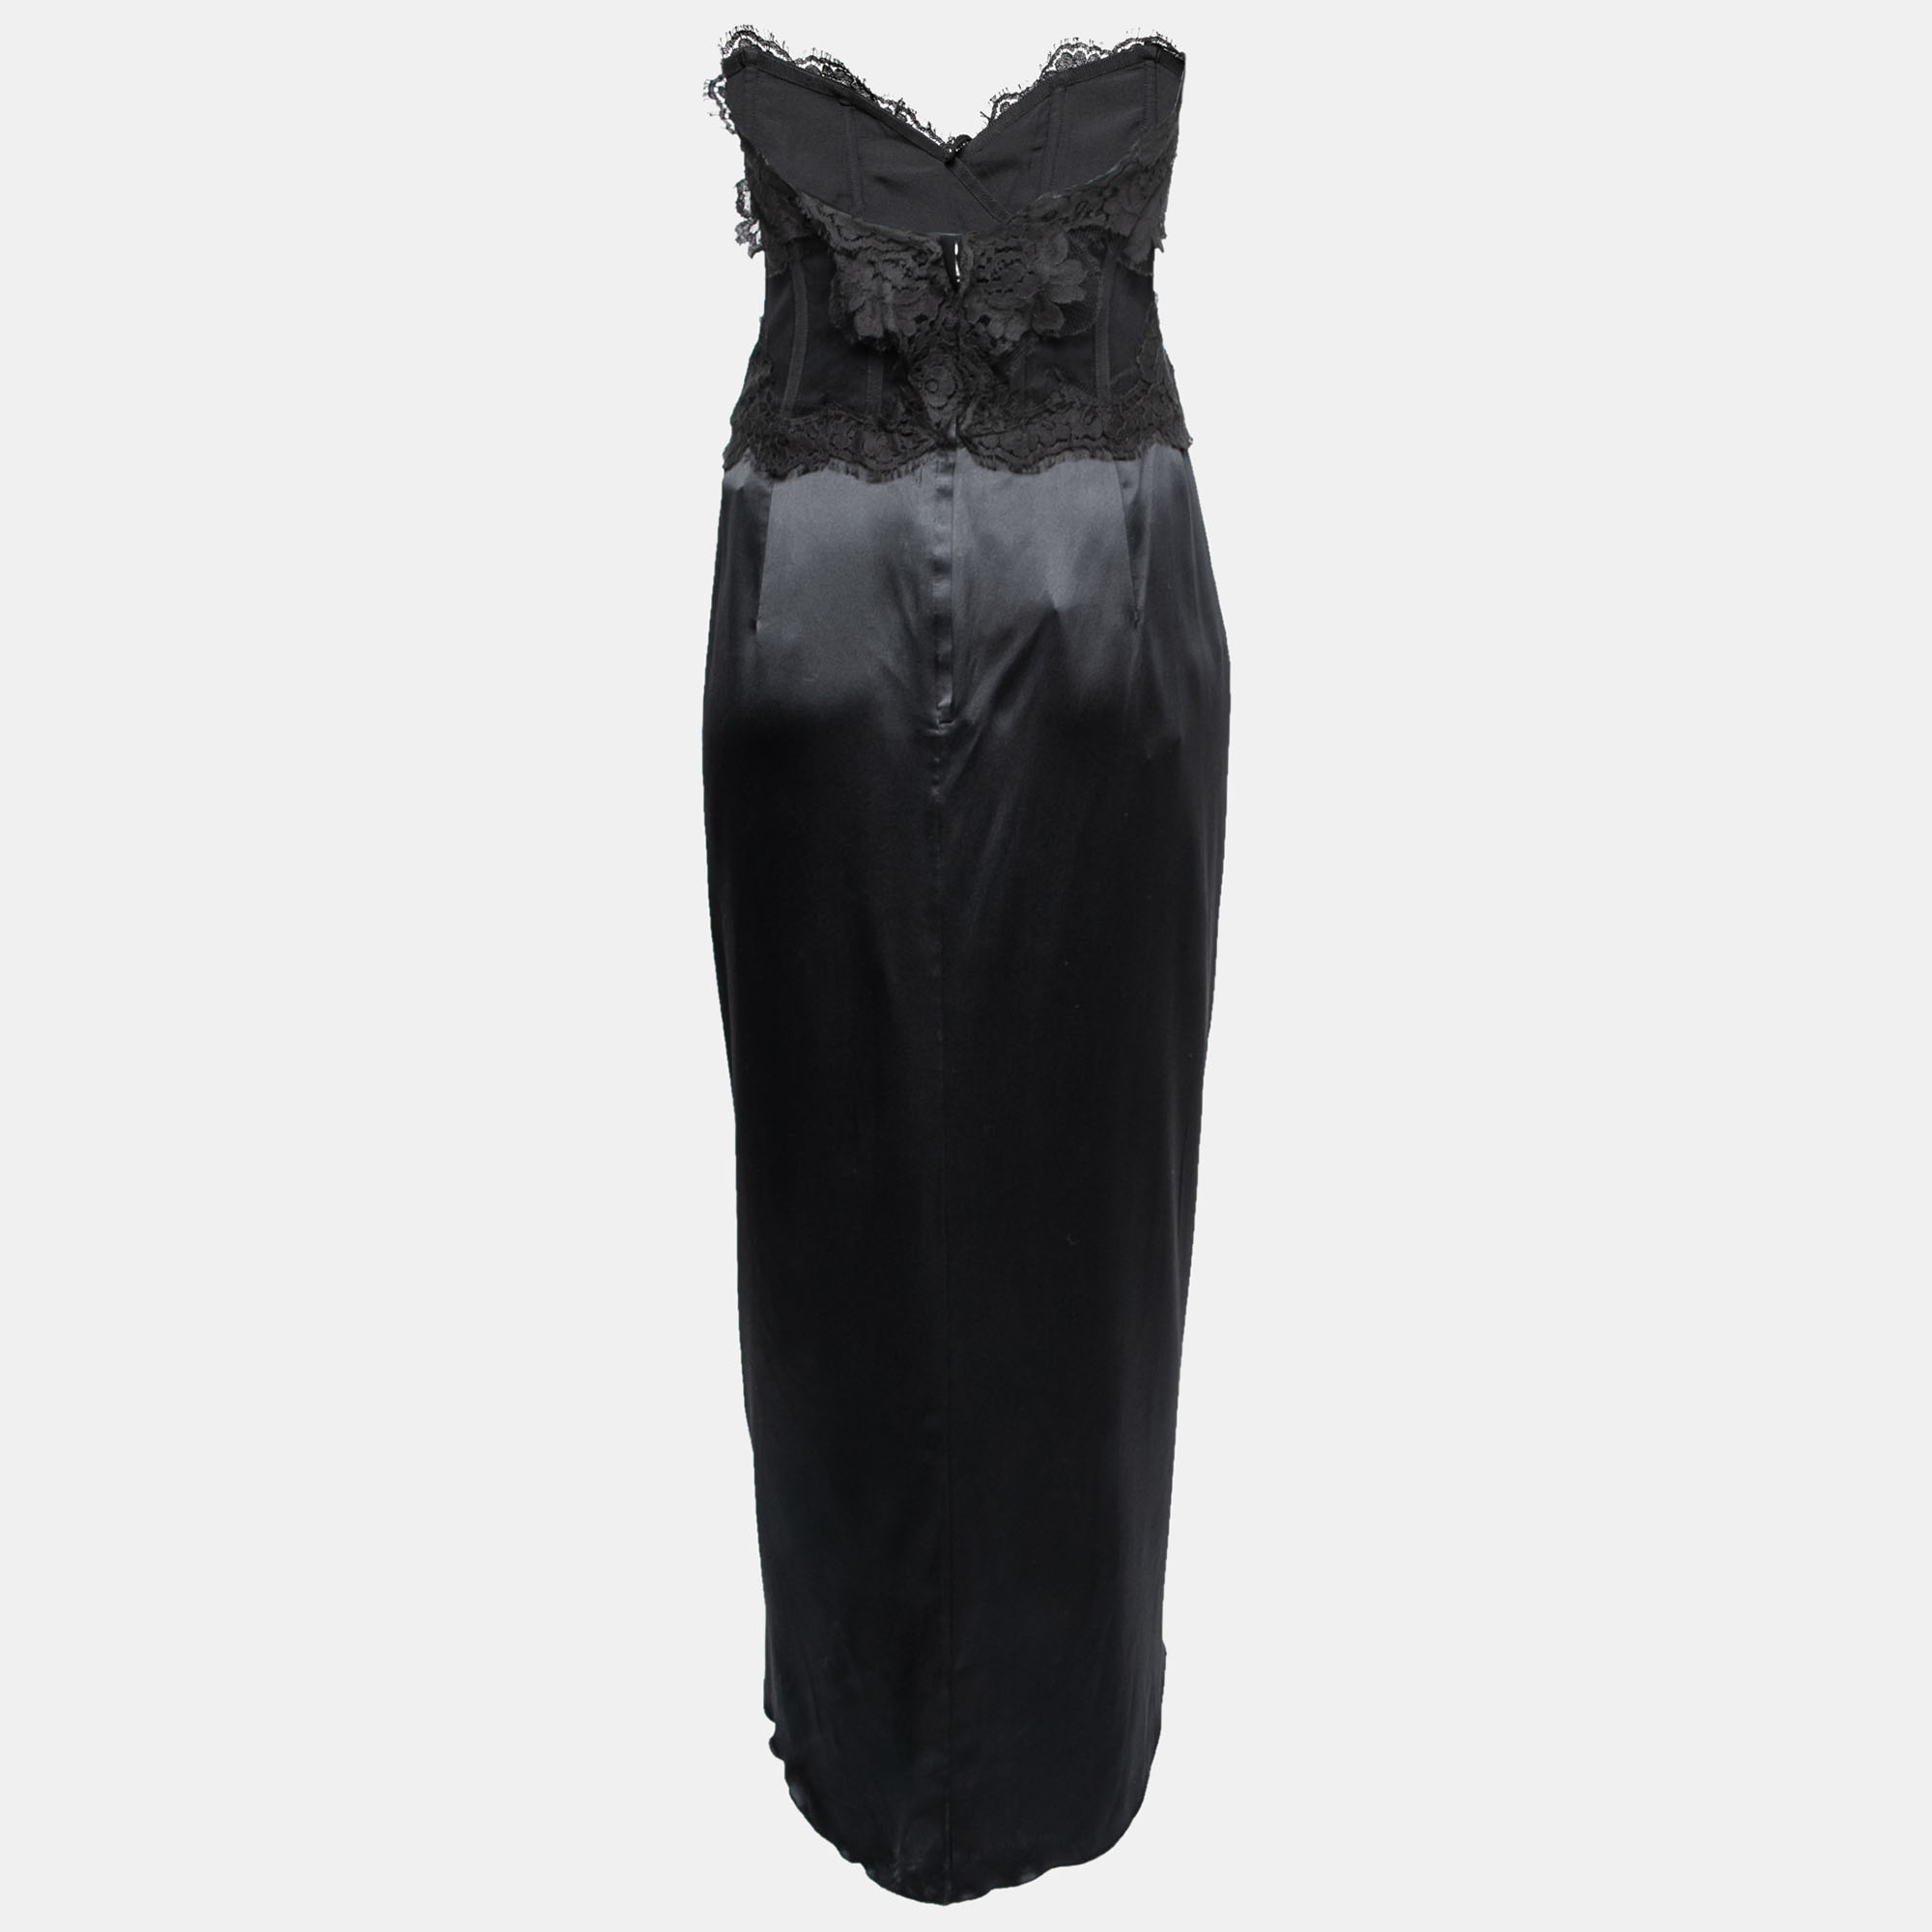 

Dolce & Gabbana Black Lace & Satin Draped Asymmetric Corset Dress